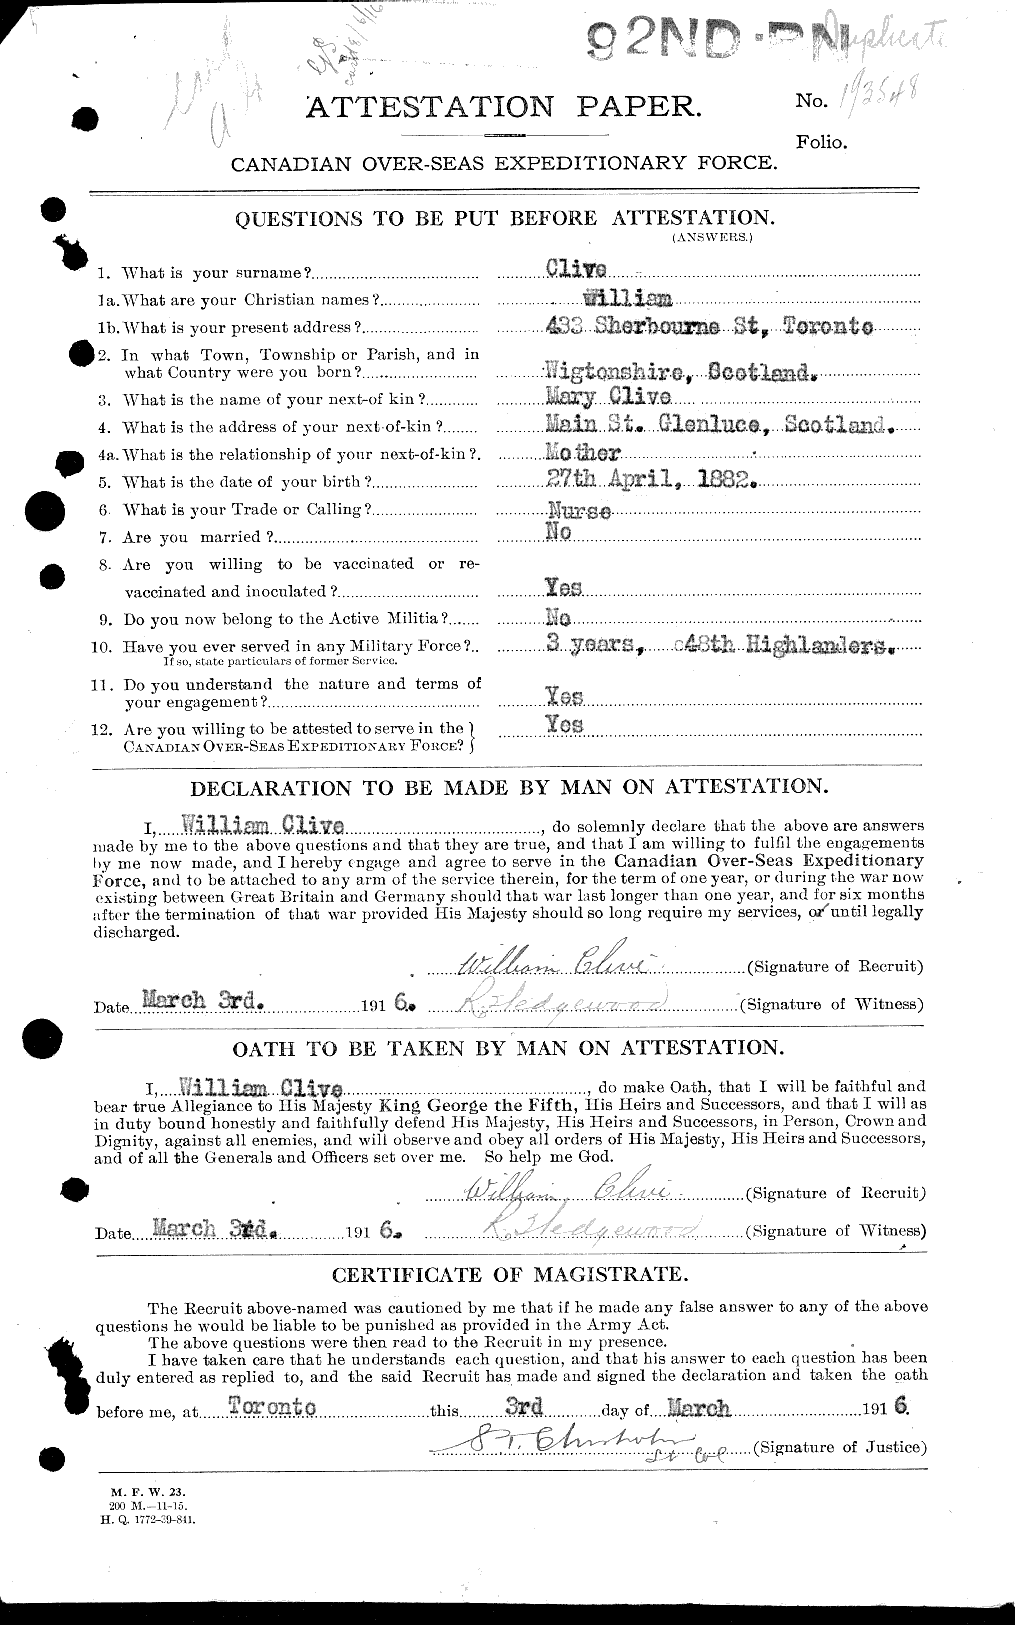 Dossiers du Personnel de la Première Guerre mondiale - CEC 025429a